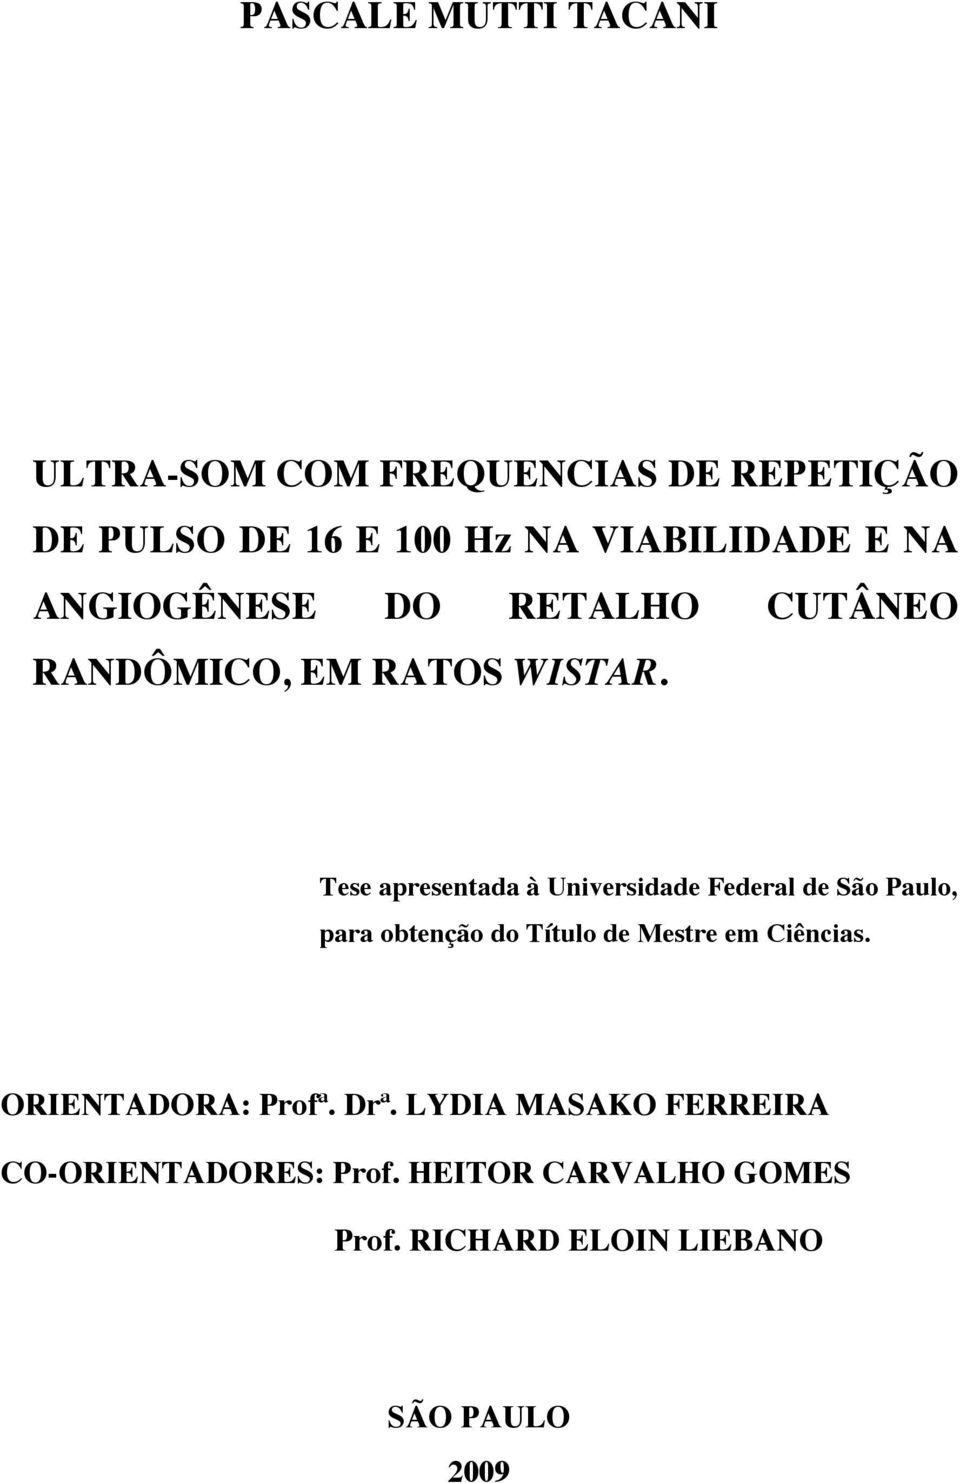 Tese apresentada à Universidade Federal de São Paulo, para obtenção do Título de Mestre em Ciências.